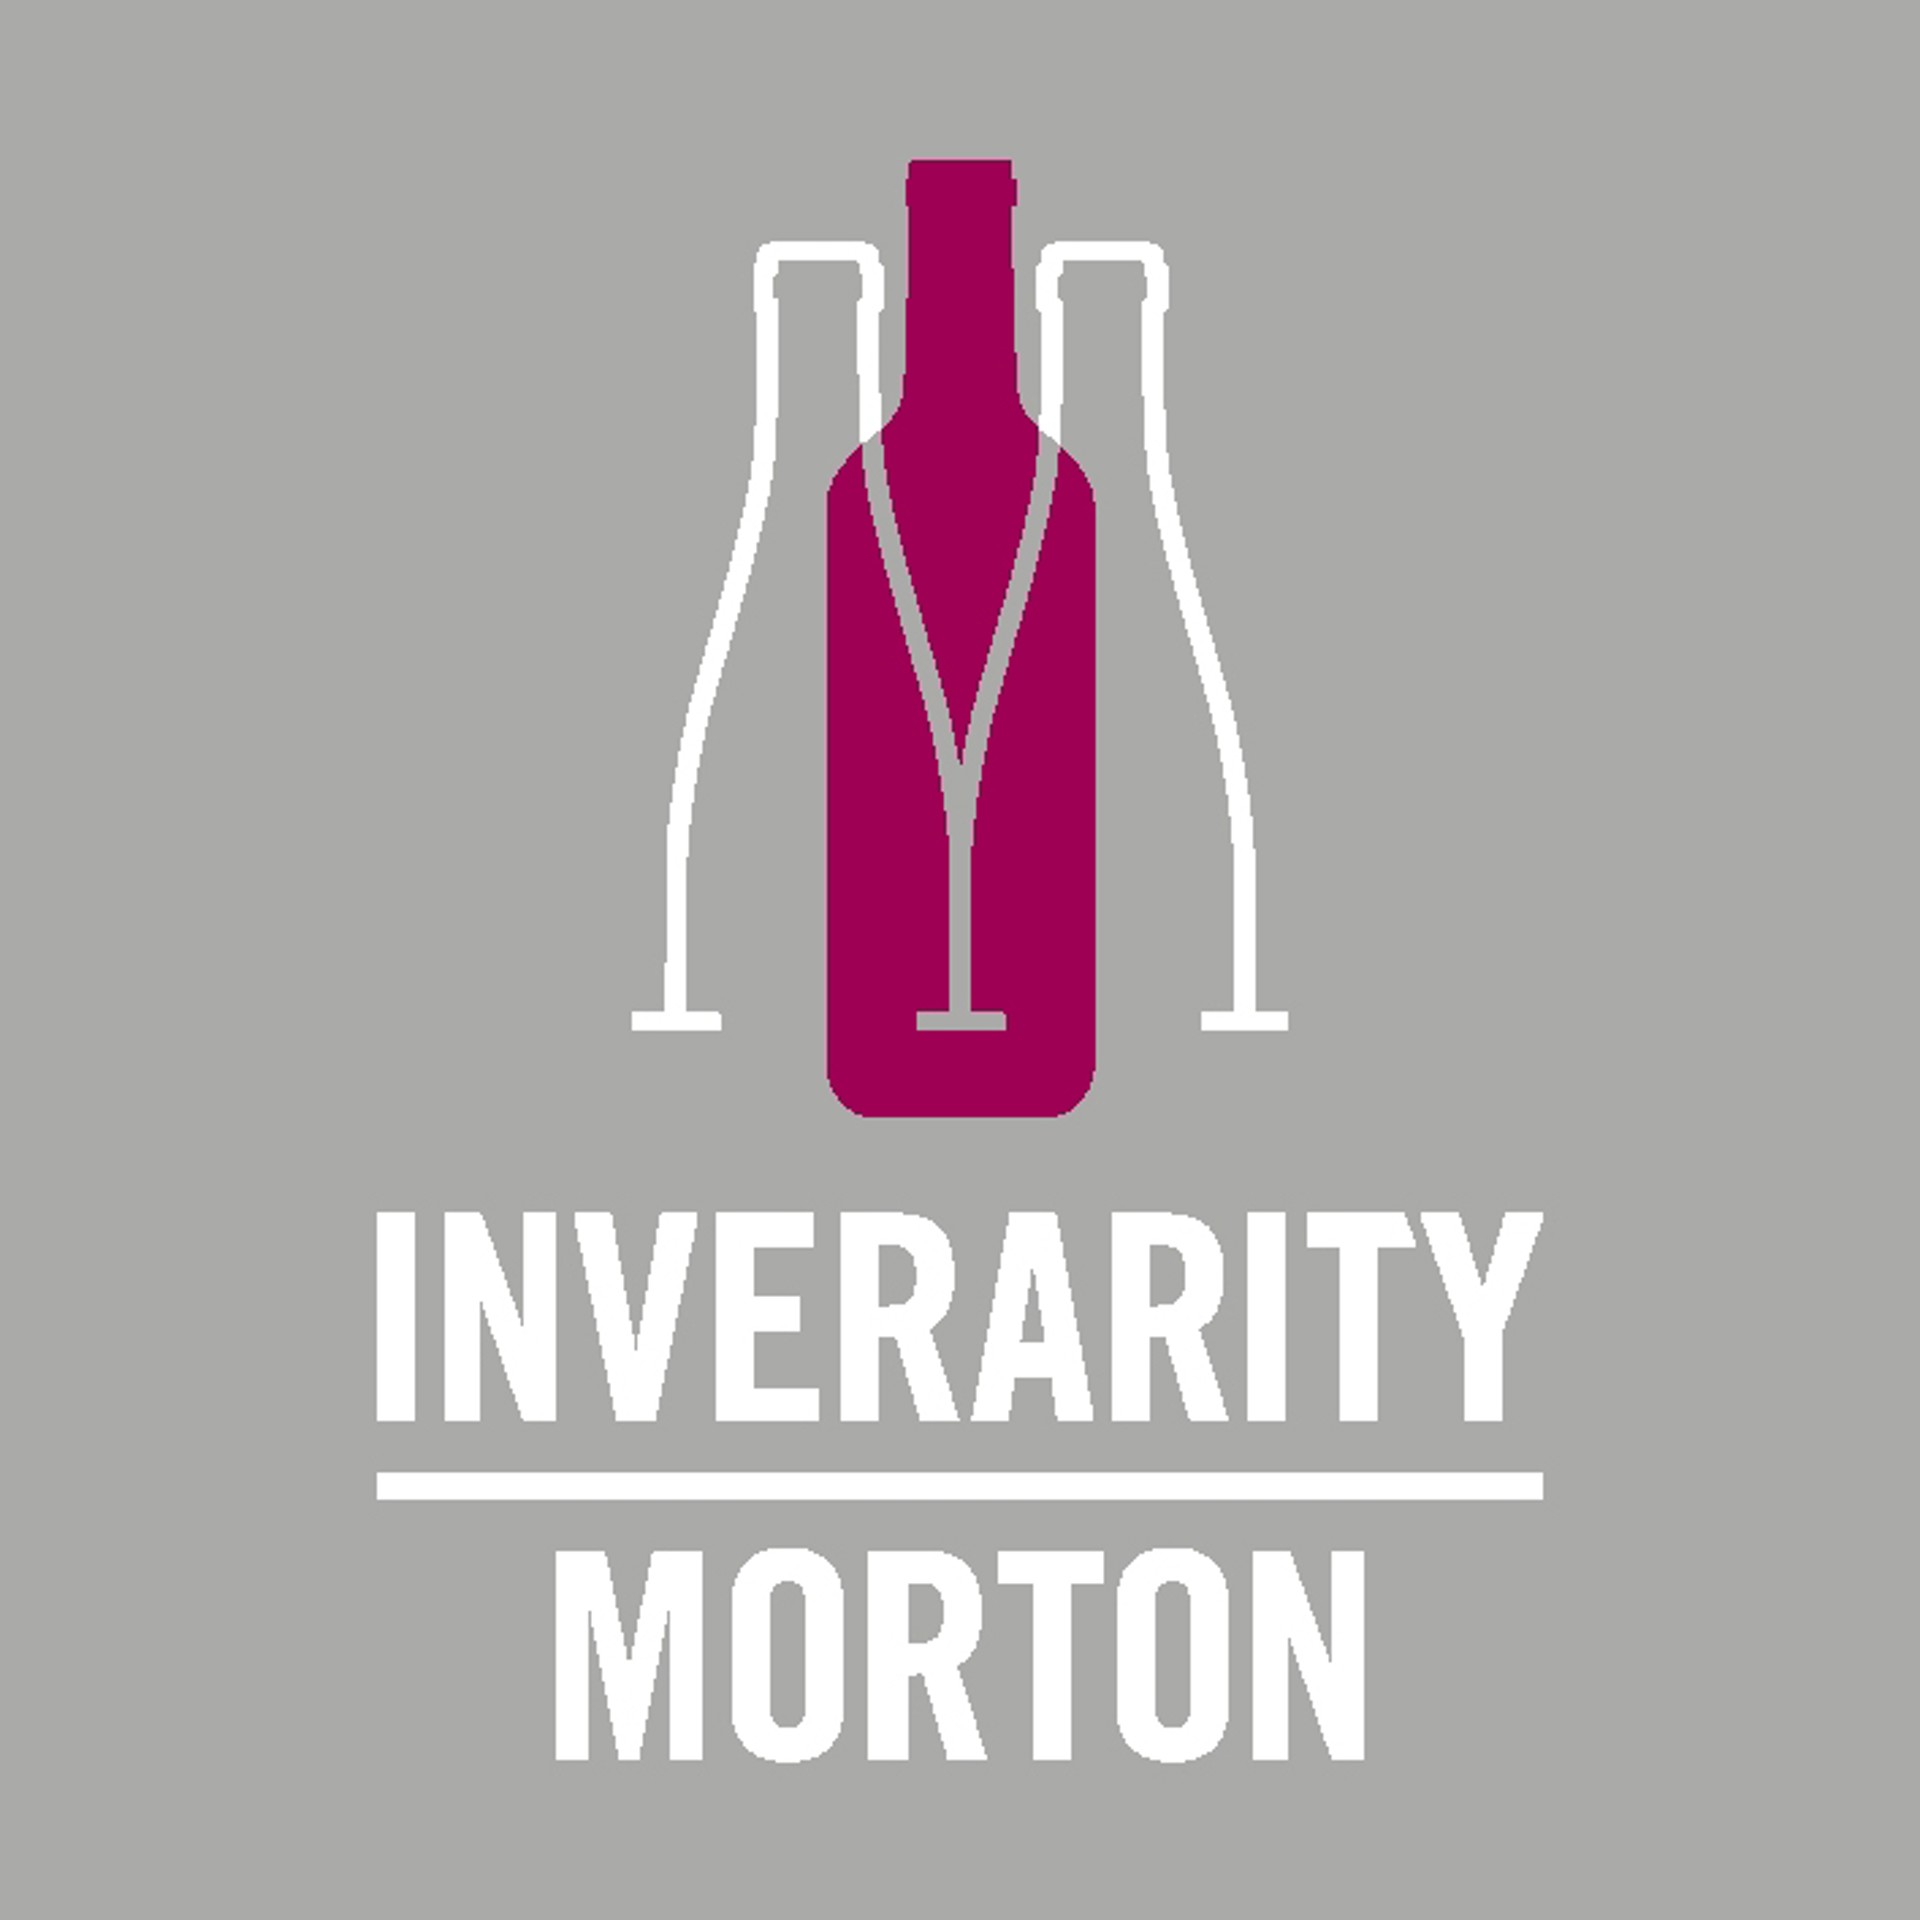 Background image - Inverarity Morton